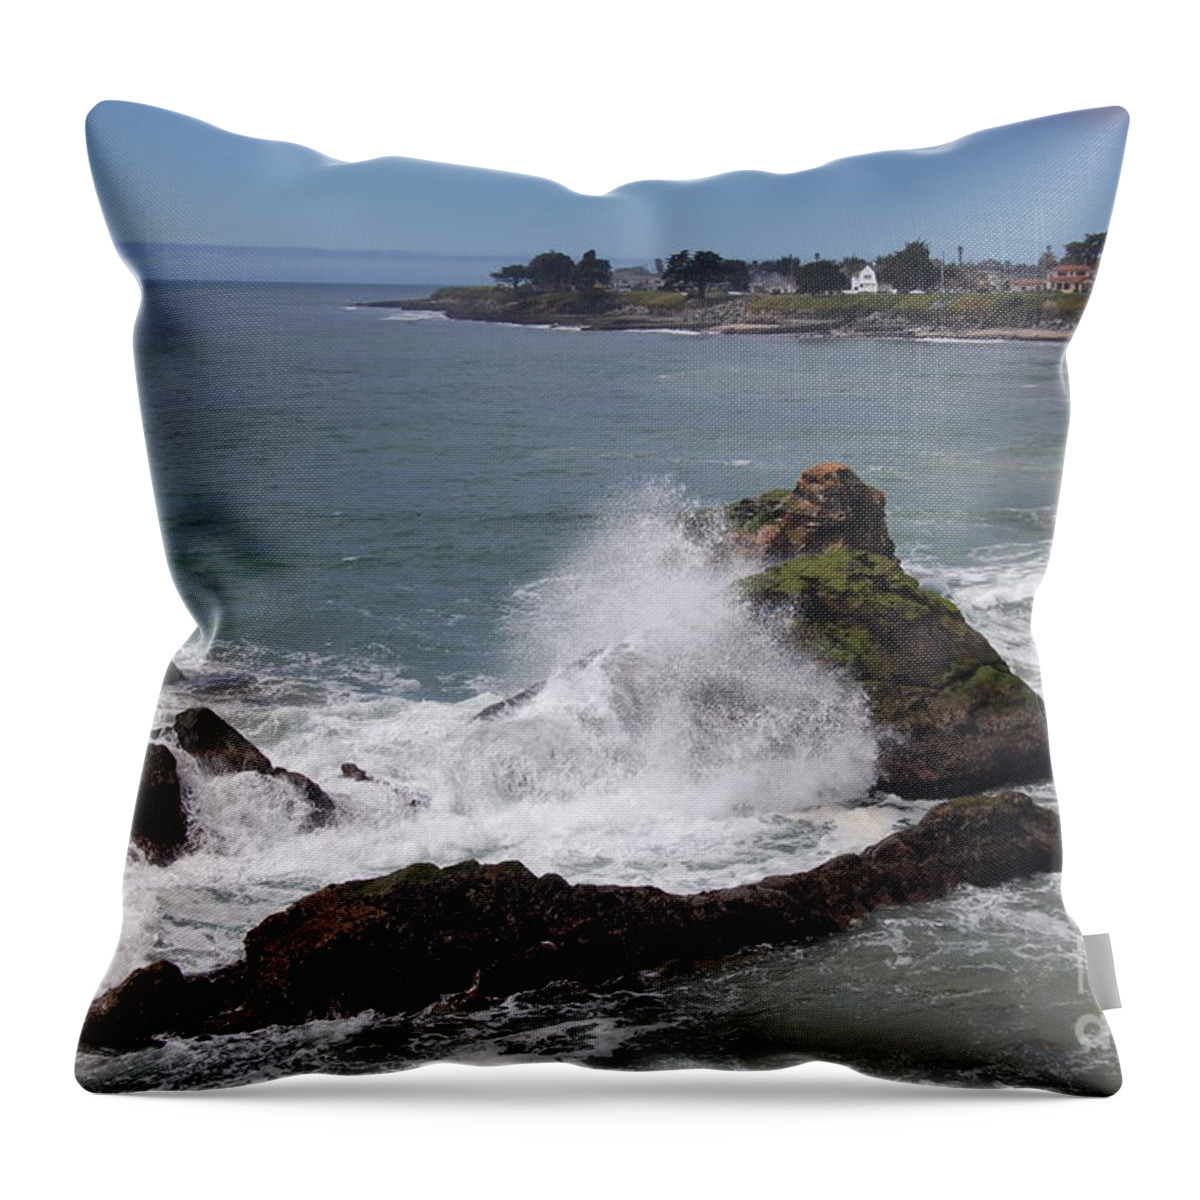 Ocean Throw Pillow featuring the photograph Ocean Spray West Cliff by Garnett Jaeger